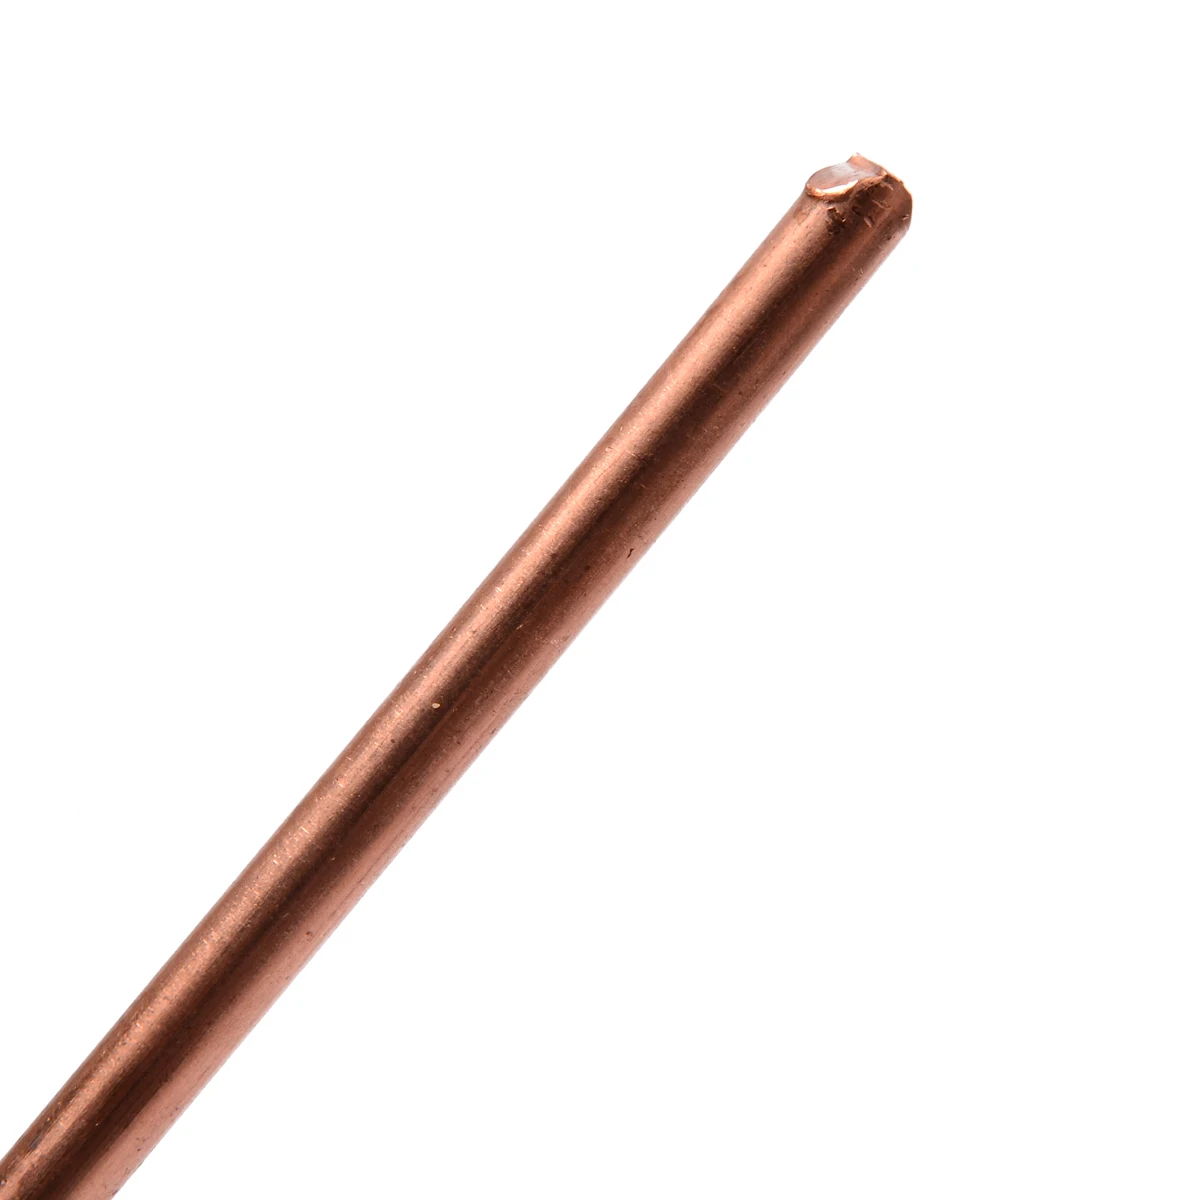 Details about   1pcs 99.9% Pure Copper Cu Metal Rod Cylinder Diameter 5mm x 200mm 